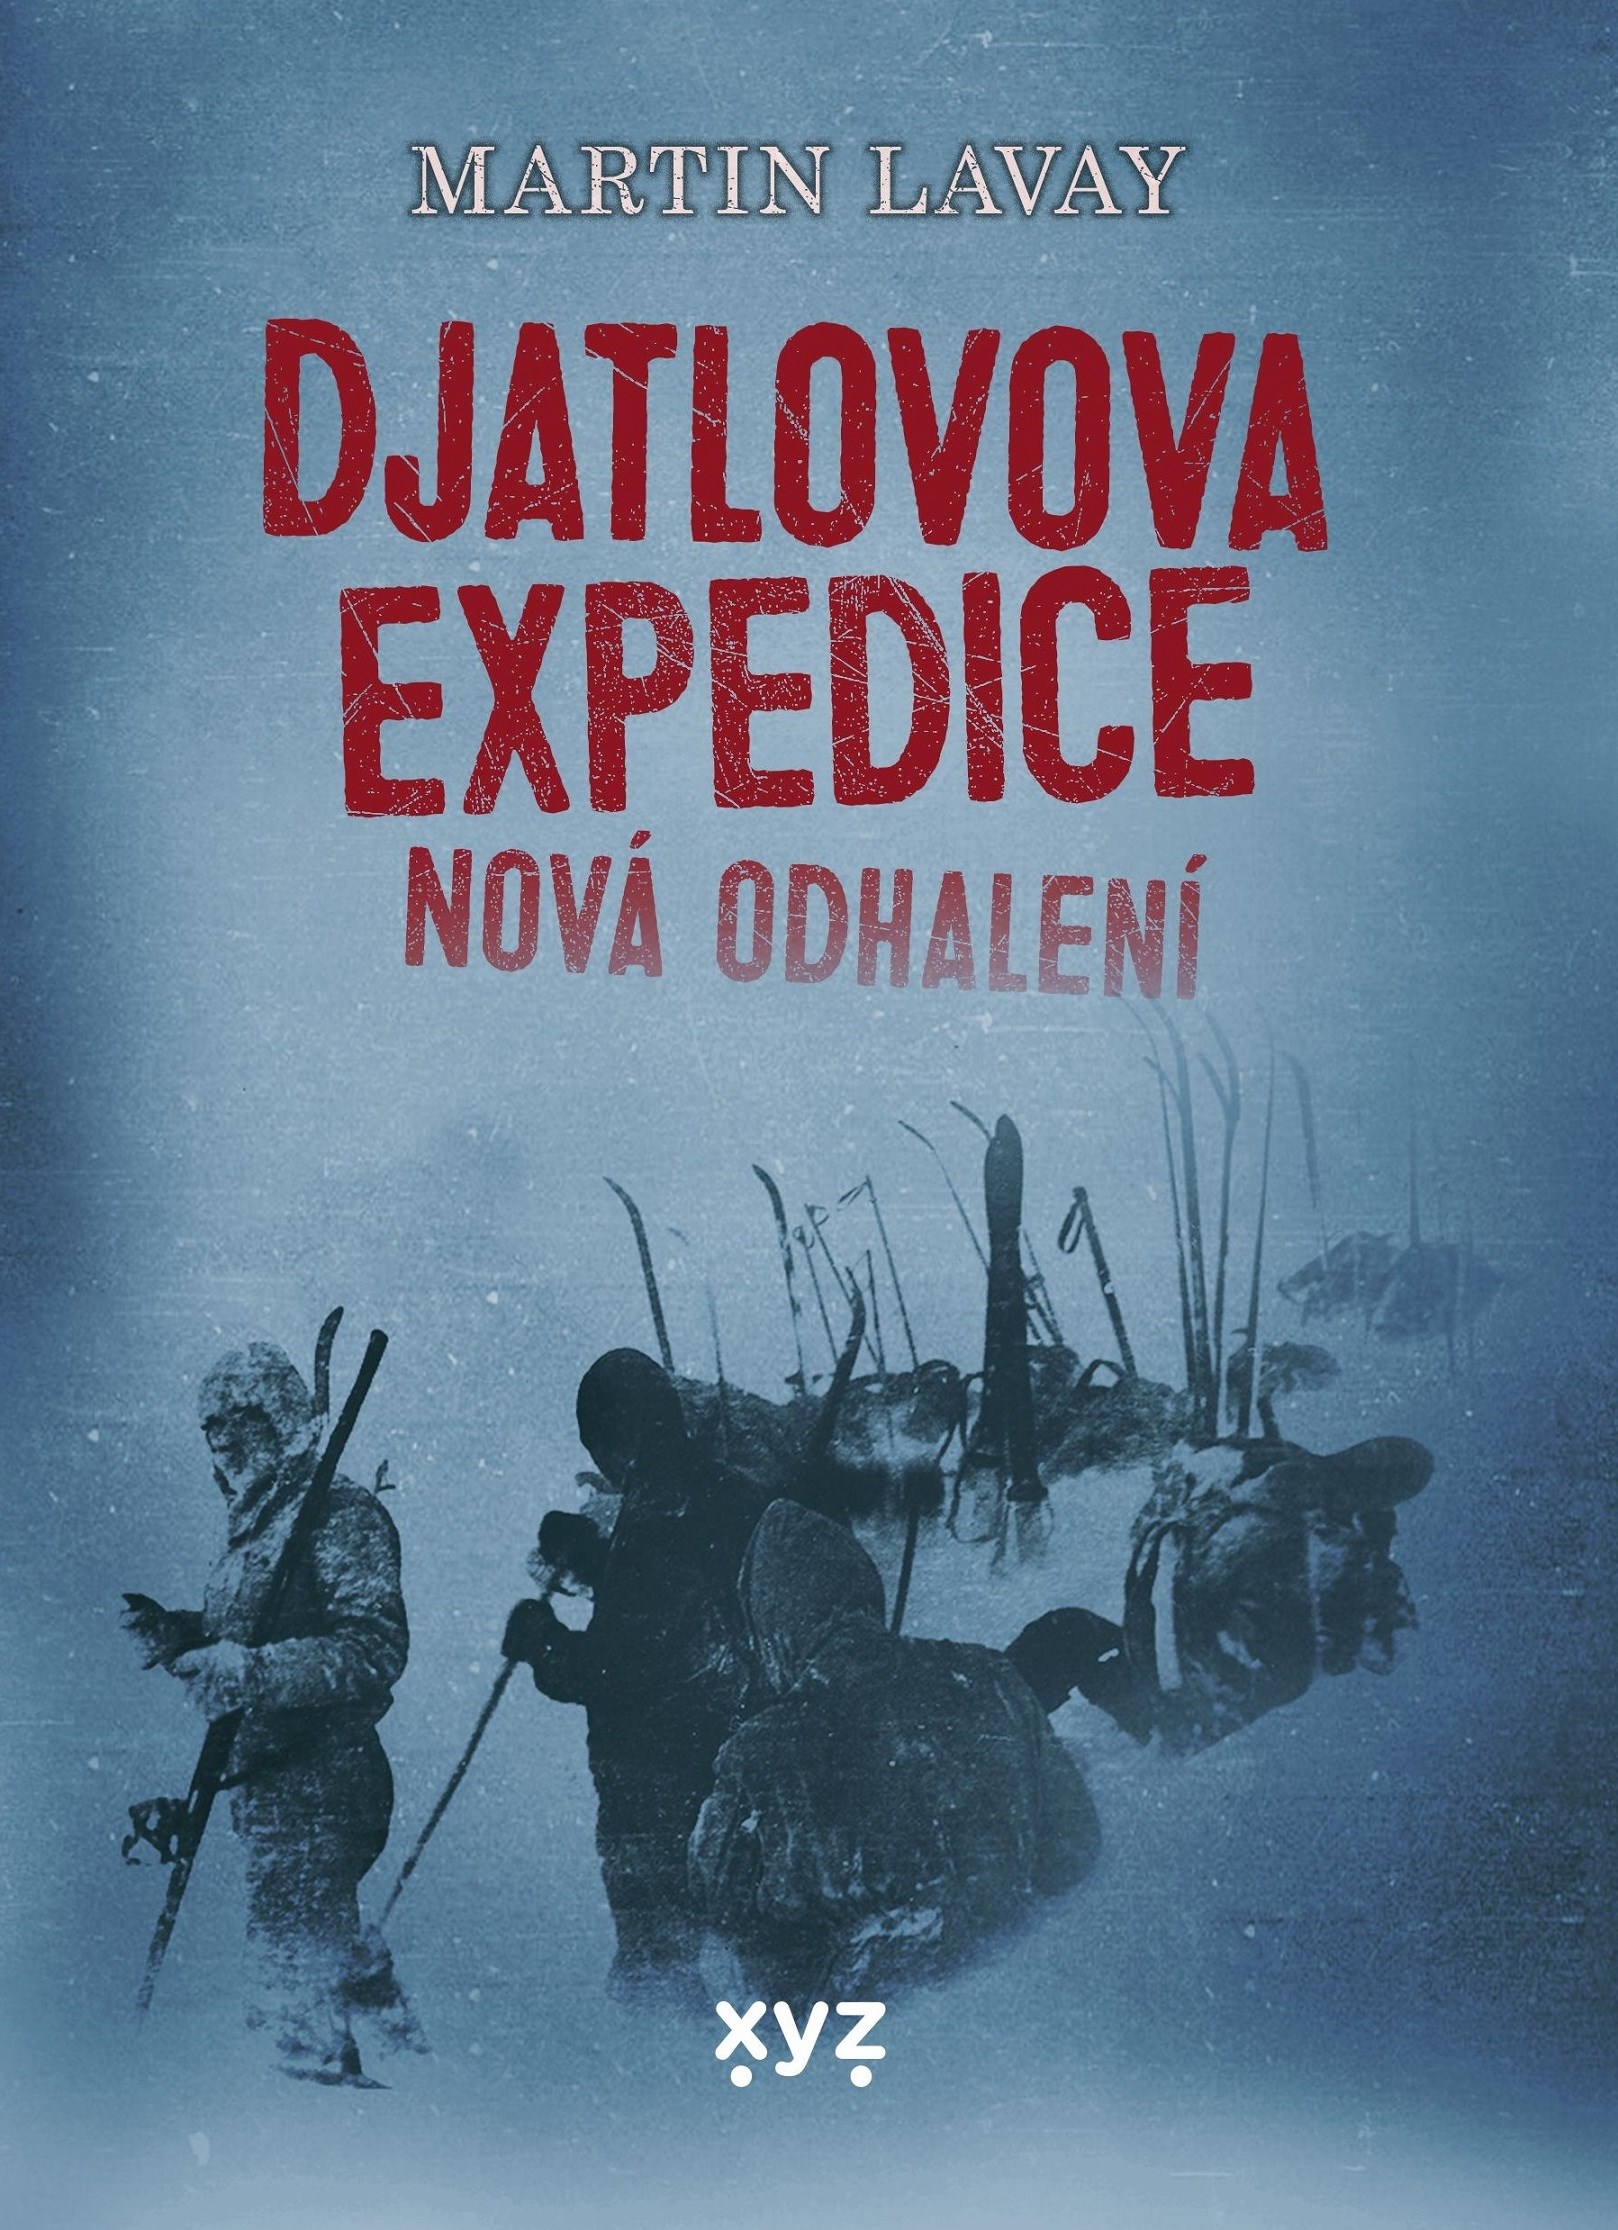 Djatlovova expedice